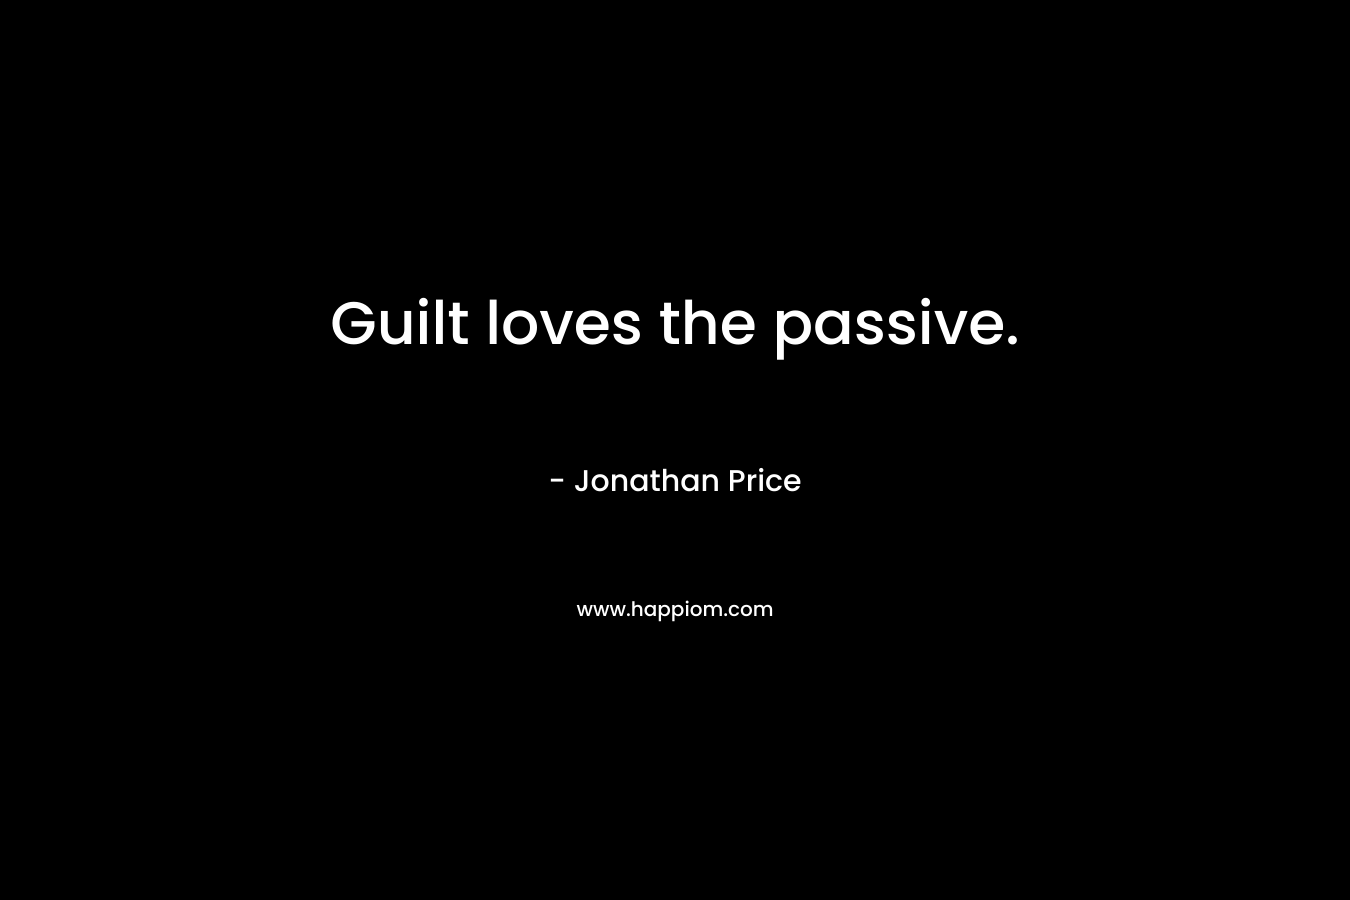 Guilt loves the passive.